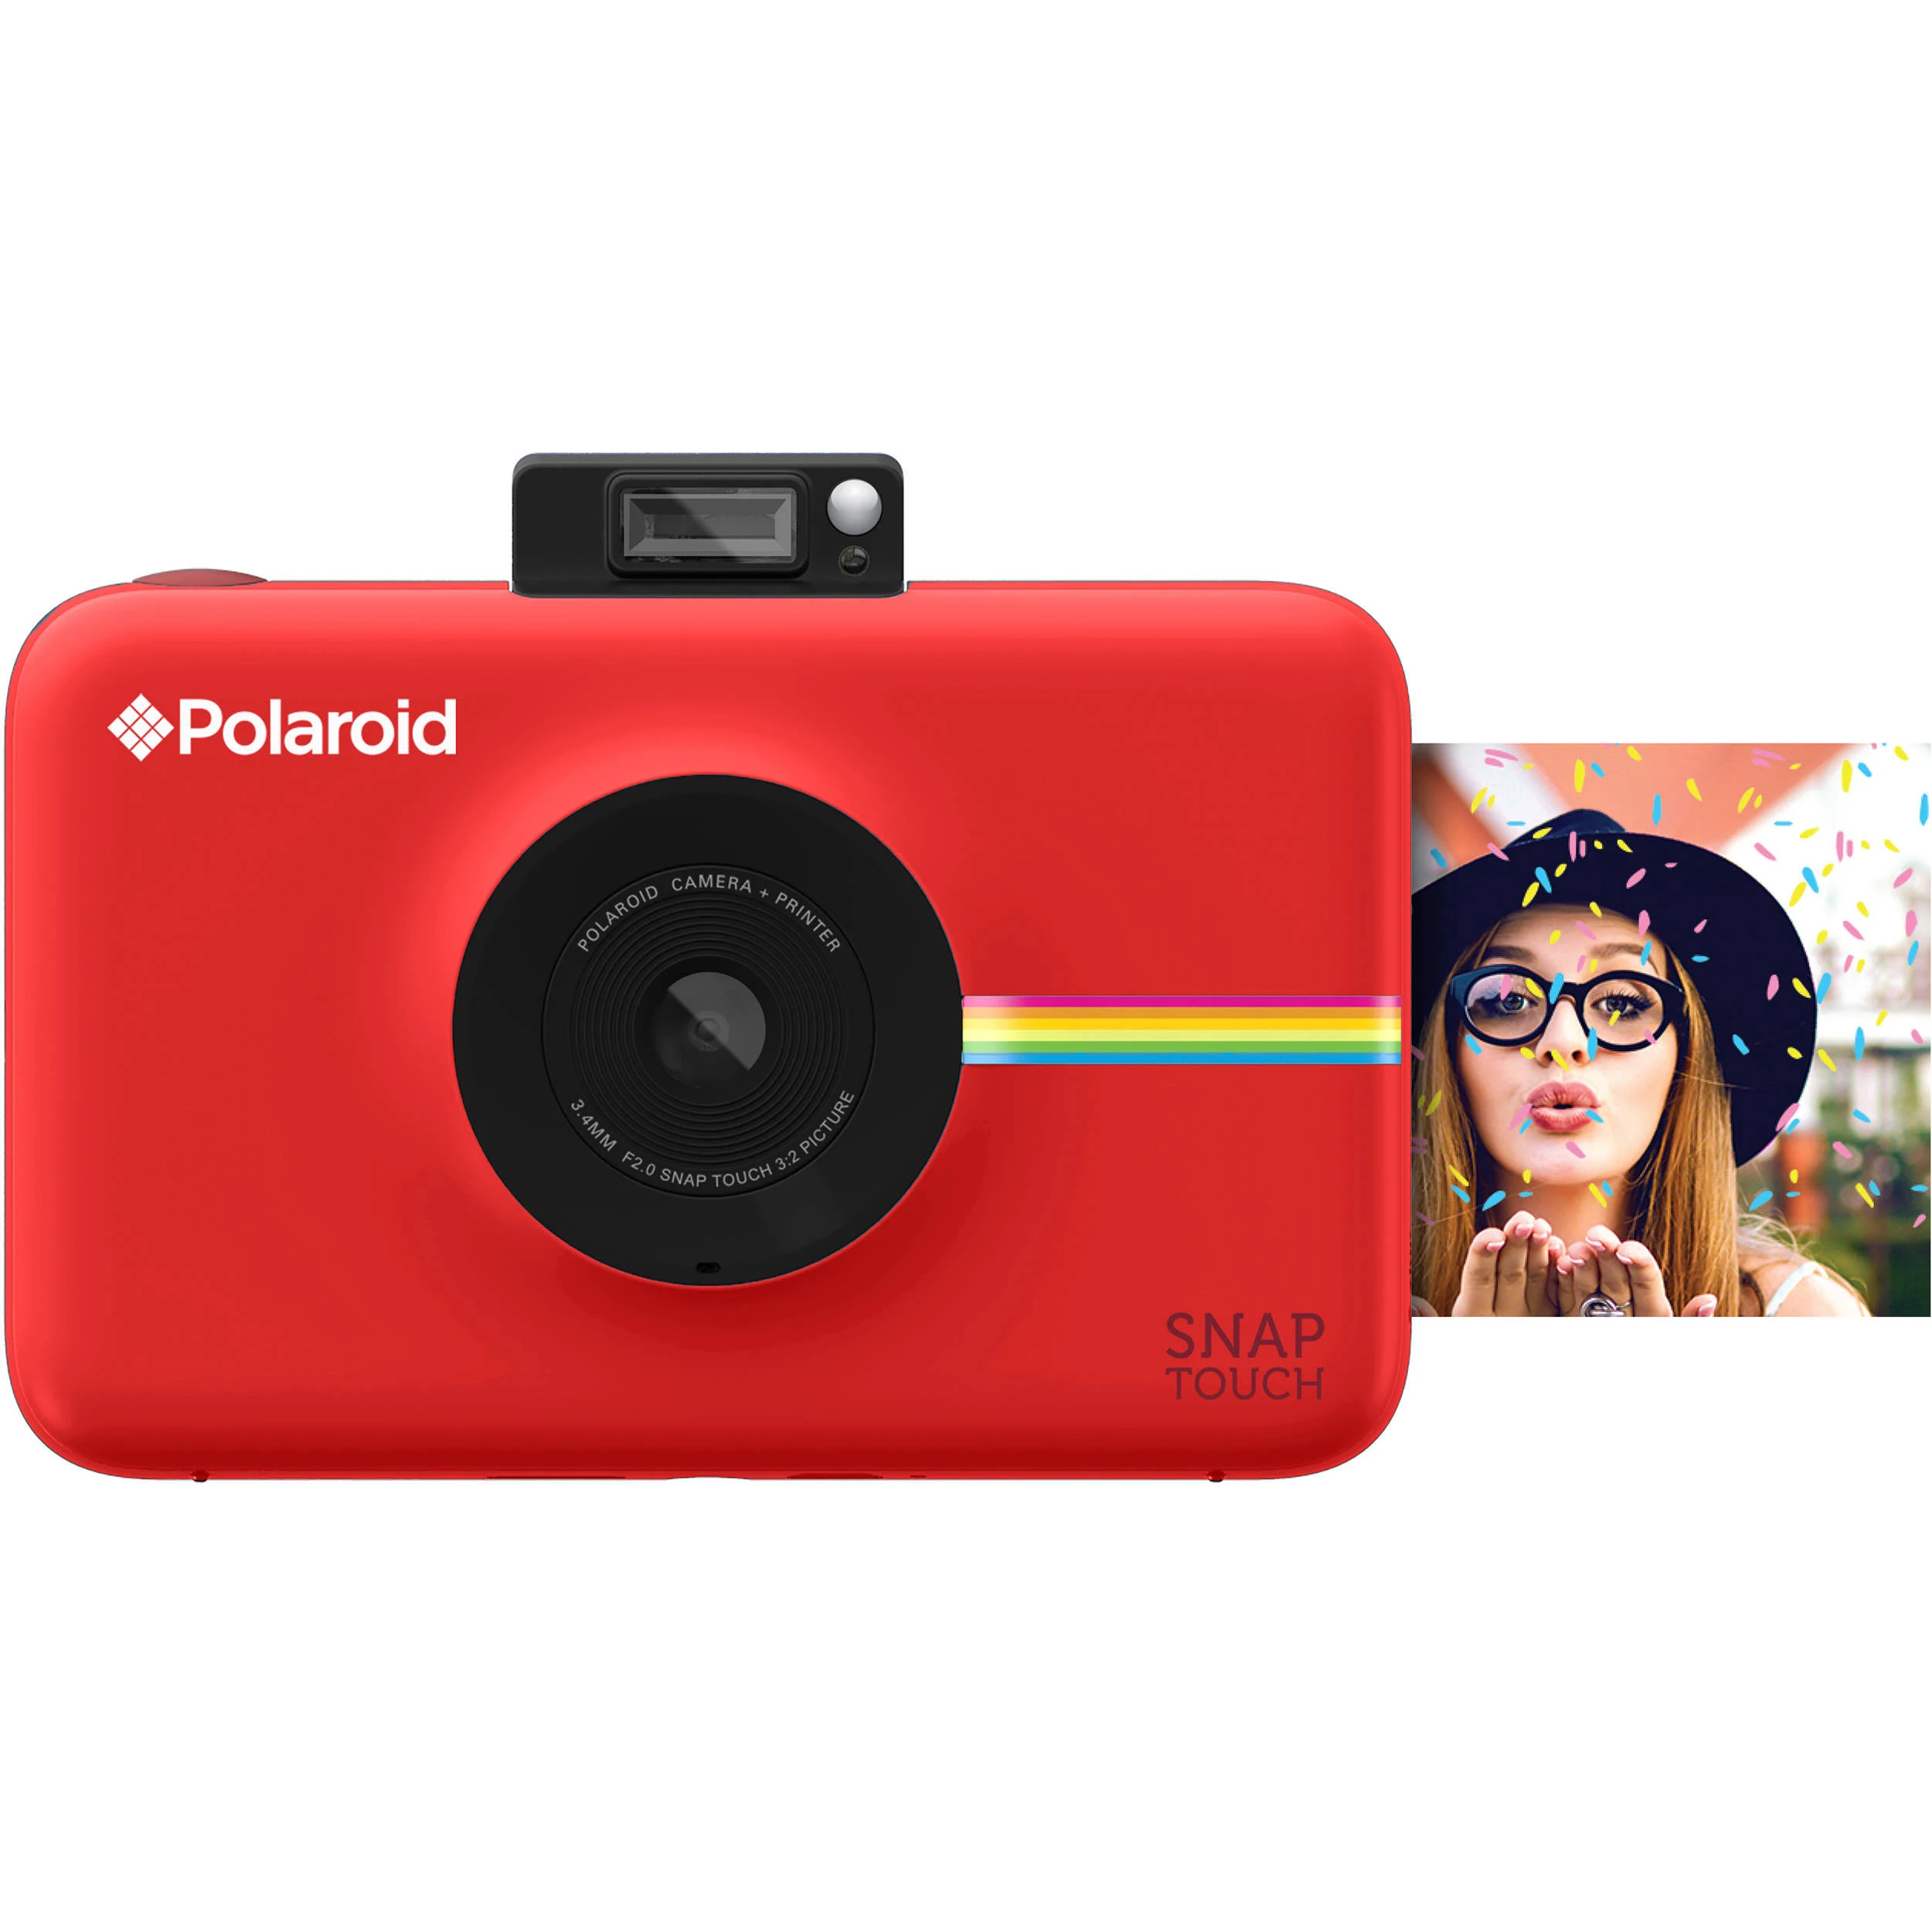 Polaroid Cyfrowy aparat fotograficzny Snap Touch z natychmiastowym drukiem i wyświetlaczem LCD (czerwony) z technologią druku Zink Zero Ink